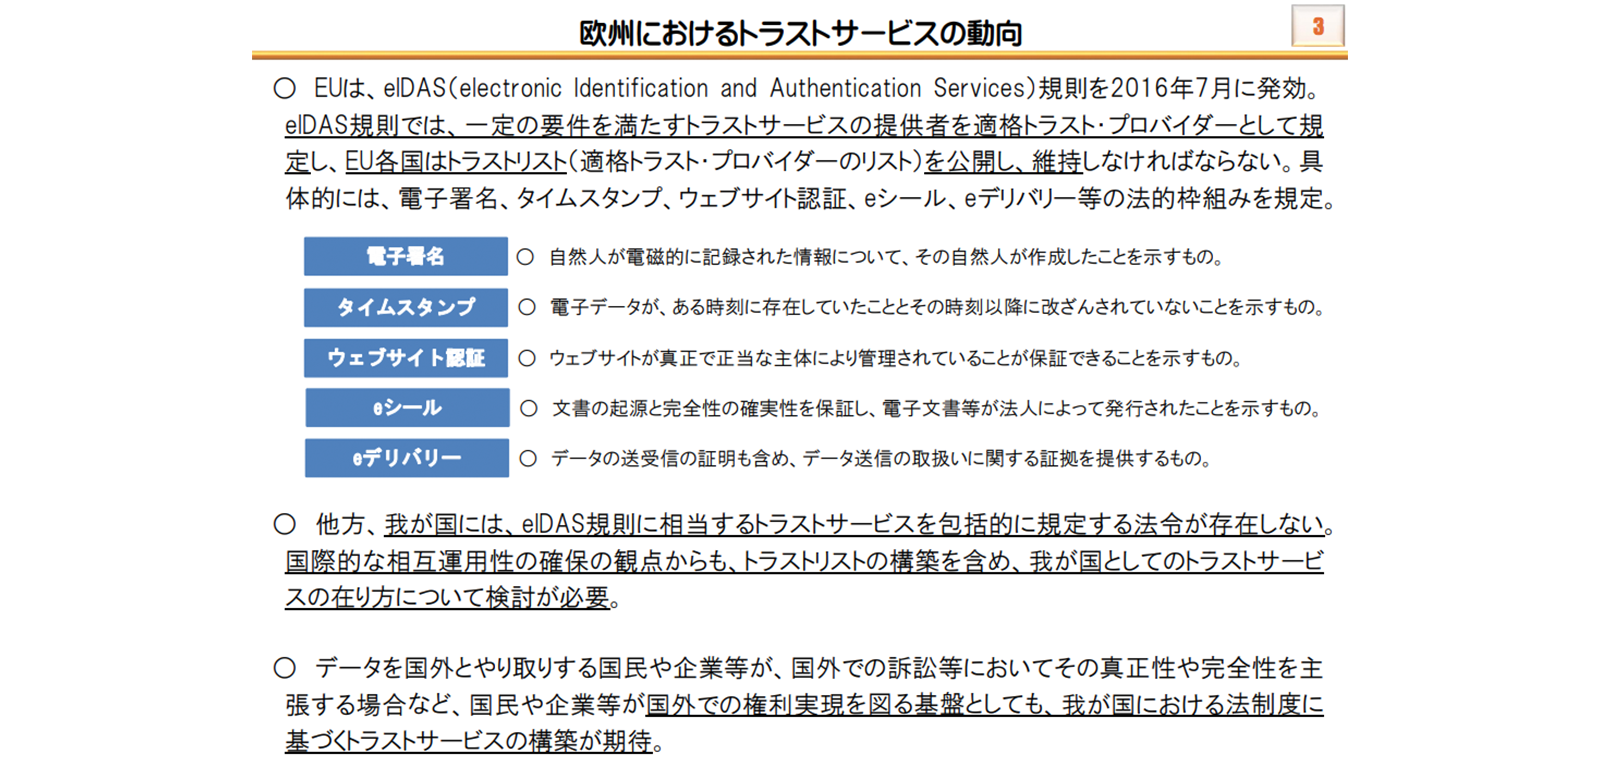 総務省「トラストサービスに関する主な検討事項」 http://www.soumu.go.jp/main_content/000597573.pdf P3